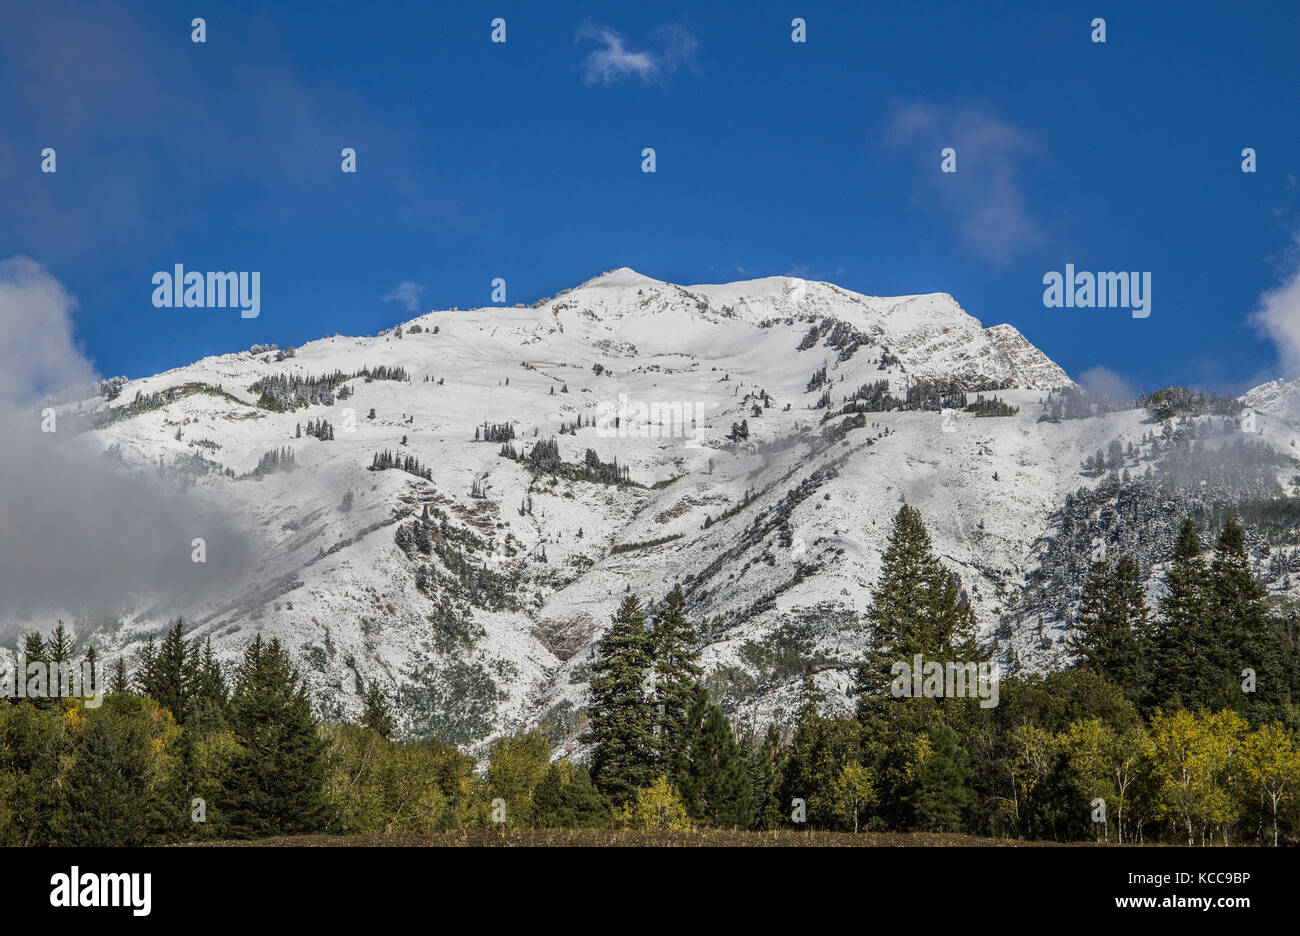 Die schneebedeckten Berge, die von dem dunklen Grün verstärkt wurde, Pinien und Farben des Herbstes, die im Vordergrund waren. in American Fork Canyon berücksichtigt. Stockfoto